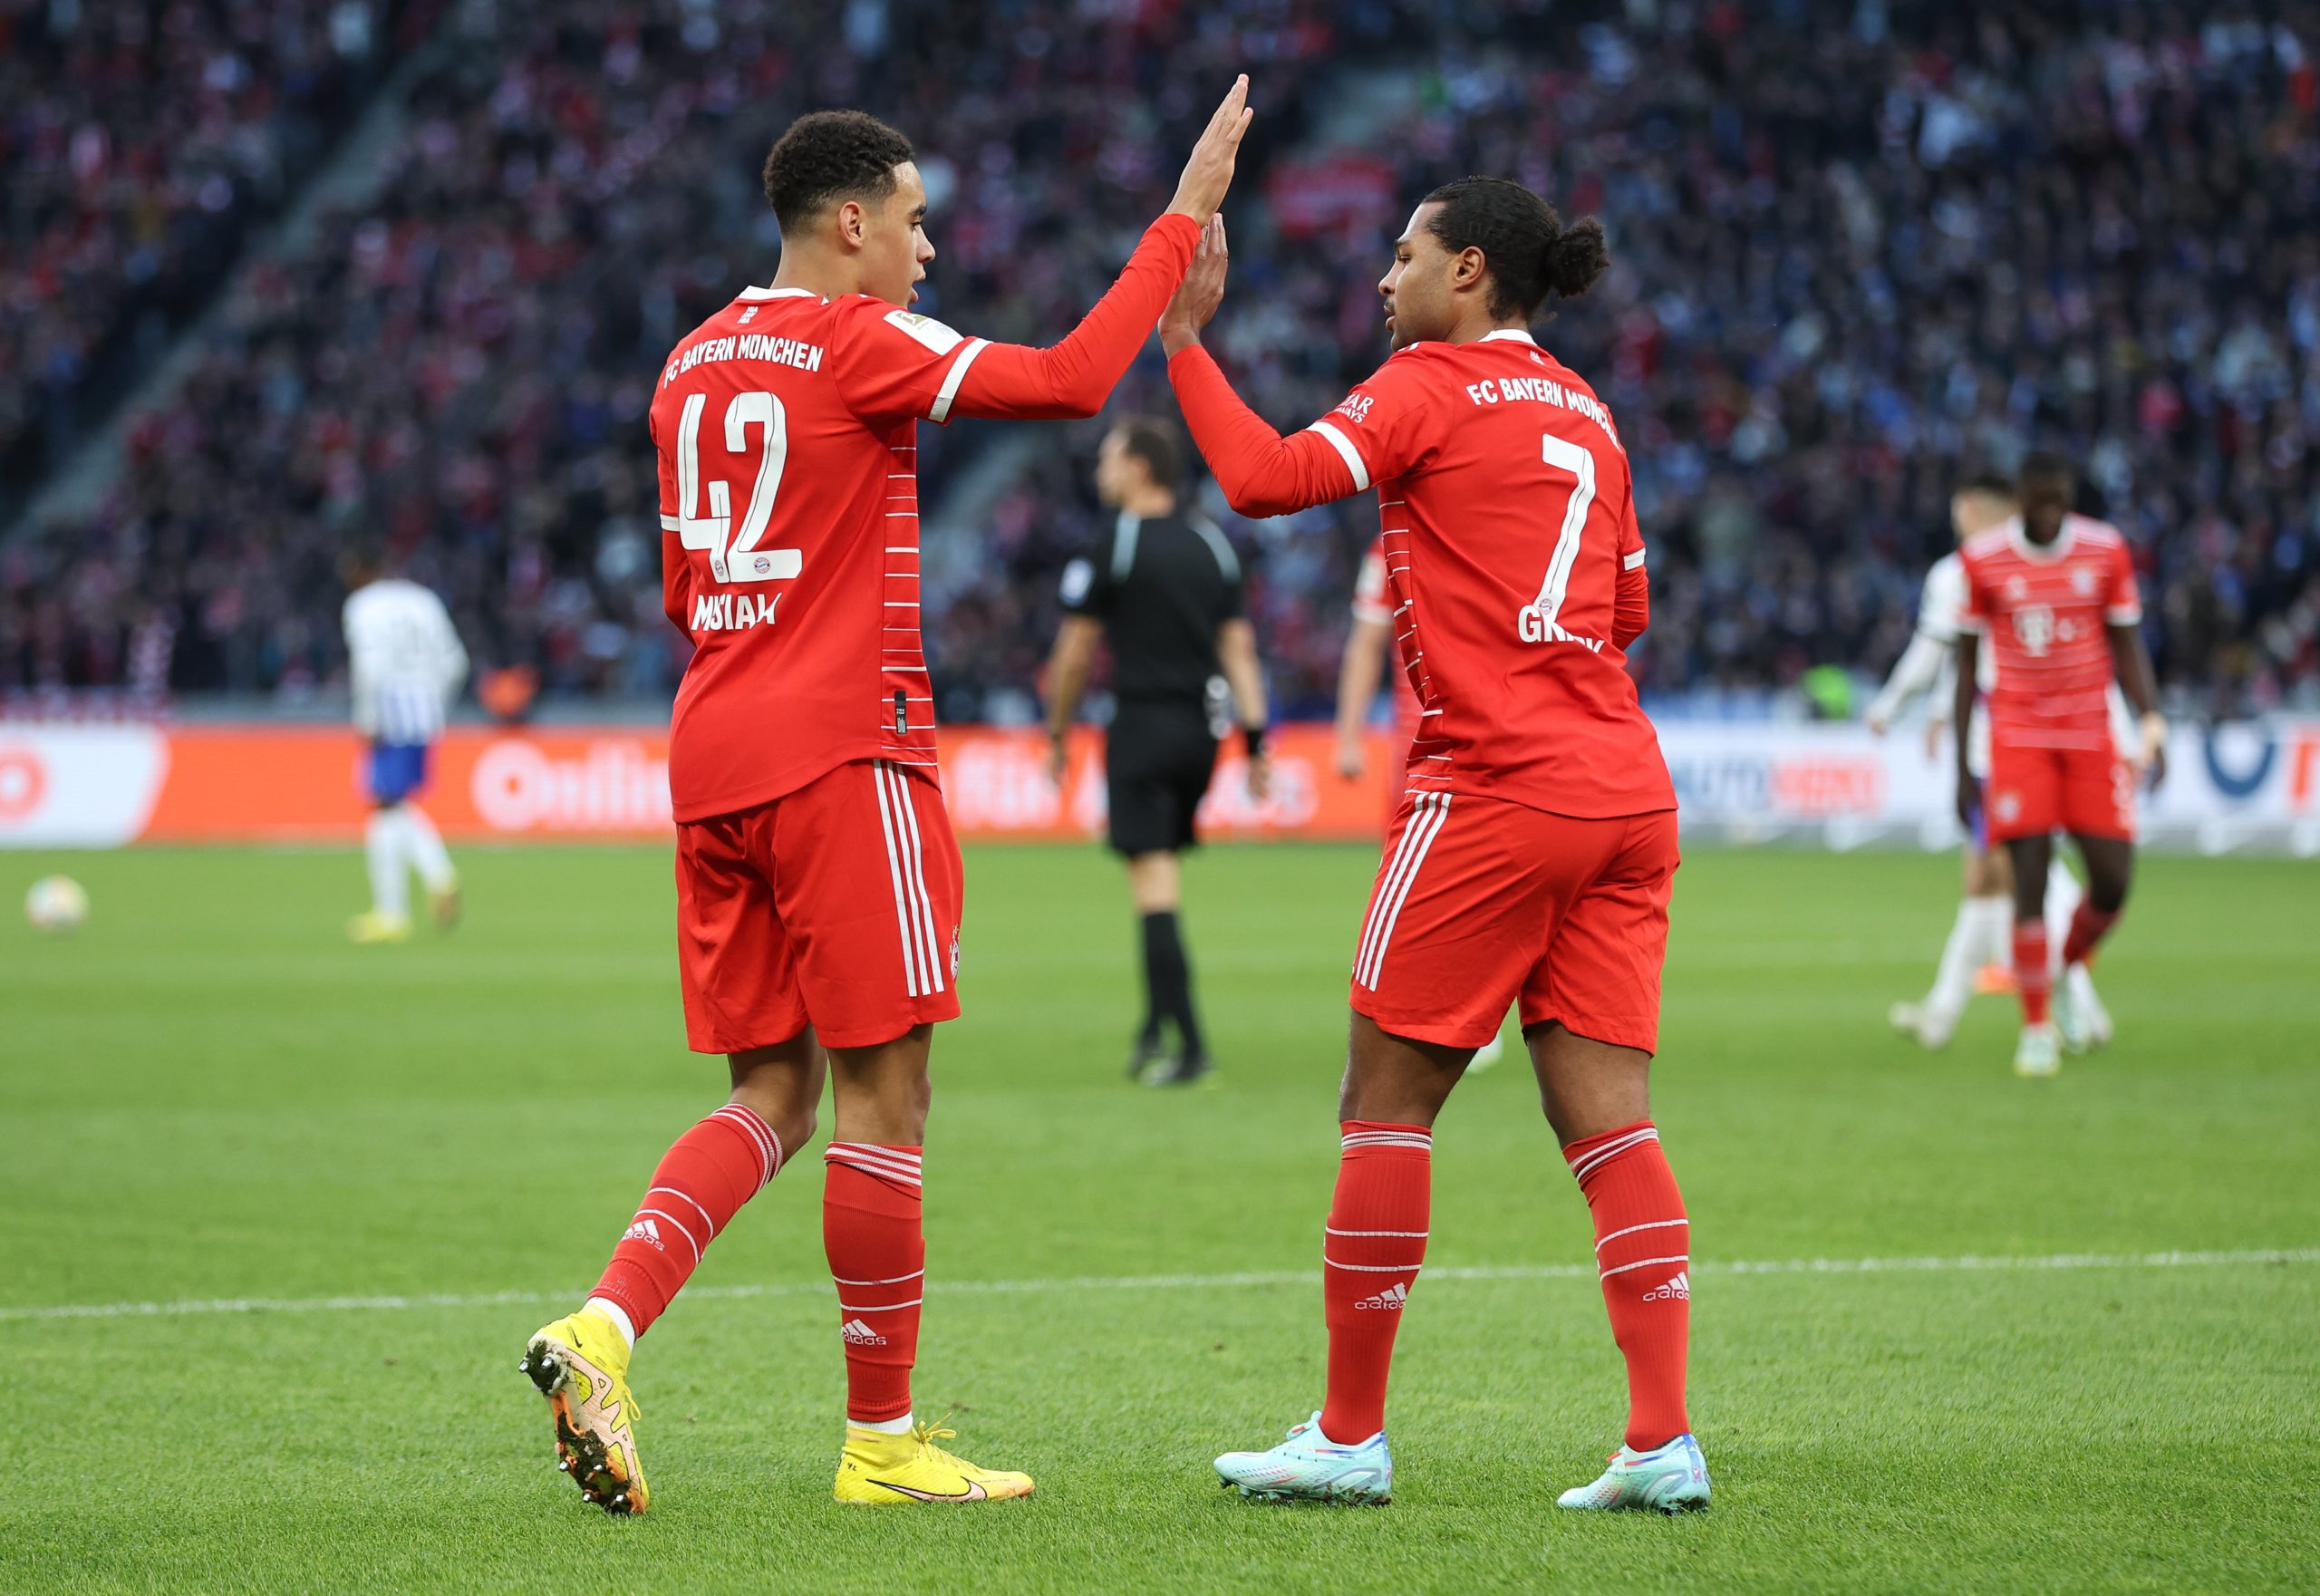 Bayern Munich derrotó al Hertha Berlin y retomó la punta de la Bundesliga